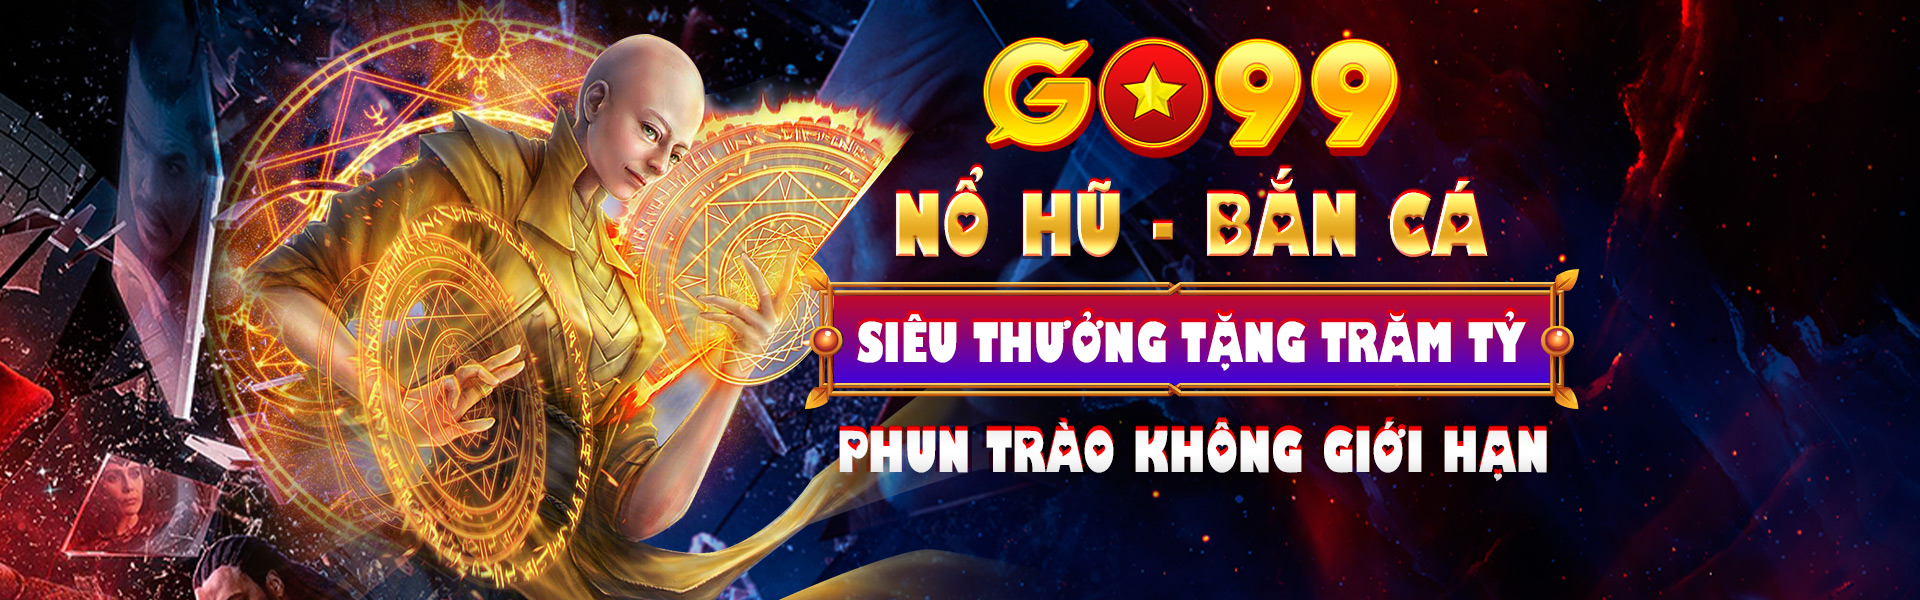 Go99 - Trang chính thức nhà cái Go99